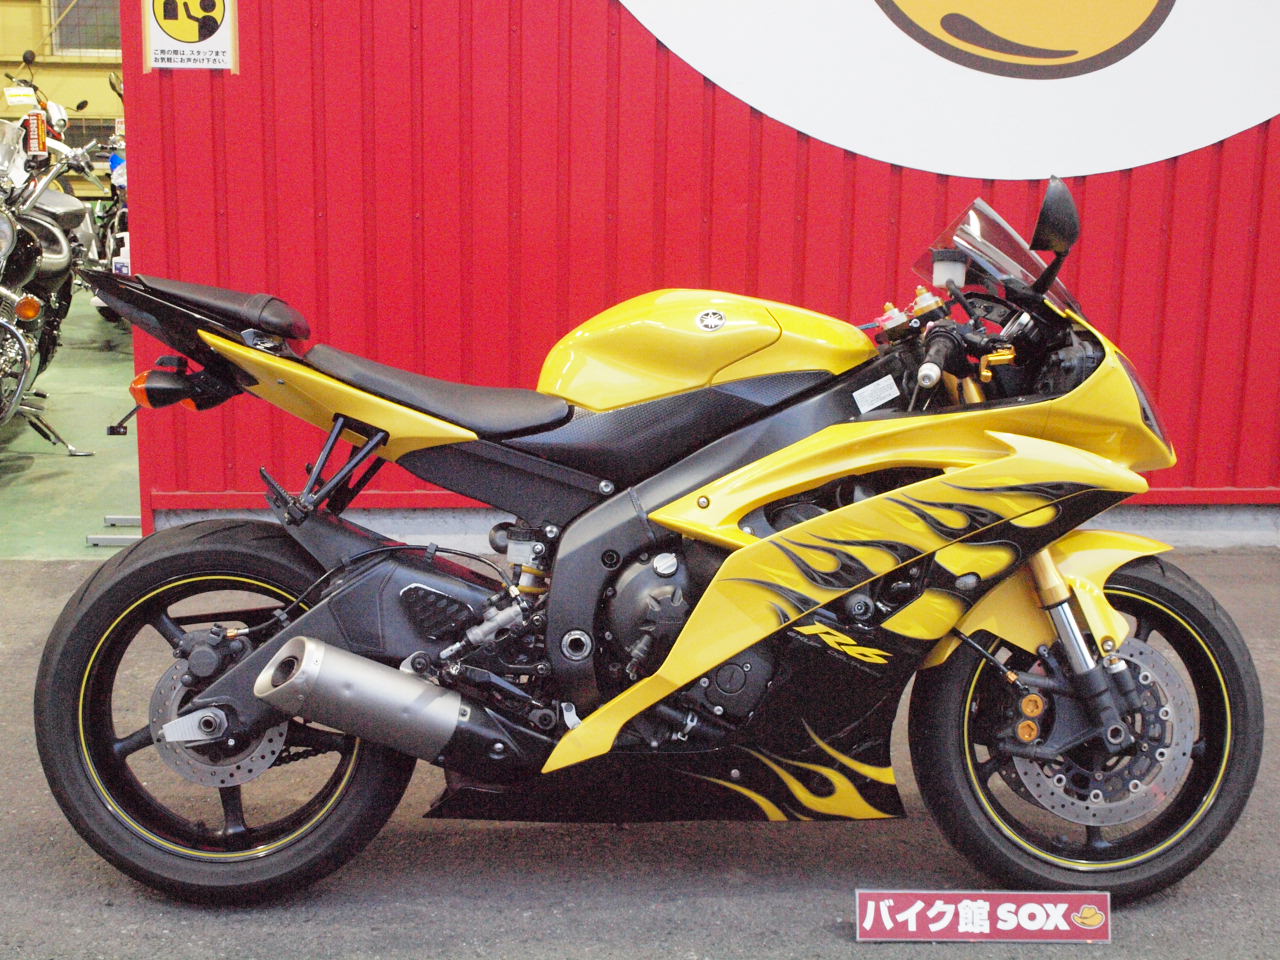 Yzf R6 ヤマハのミドルスーパースポーツ バイク館 Sox ブログ 珍しい独自輸入バイクが多数あります